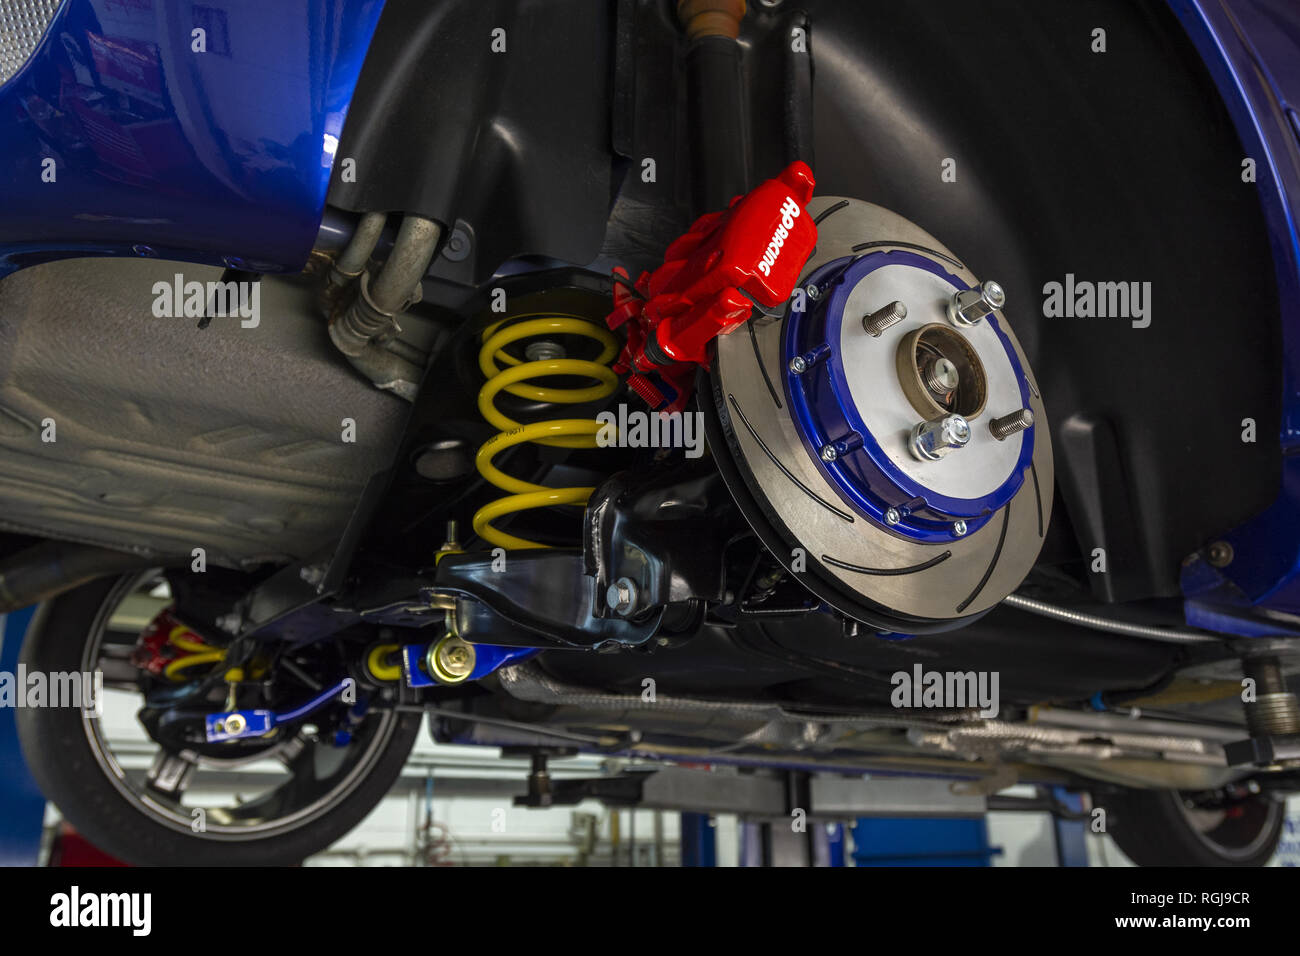 AP Racing Bremsscheibe hergestellt, um State-of-the-Art Materialien und zu verwenden Design-Techniken, um die optimale Leistung / Kühleigenschaften bieten Stockfoto